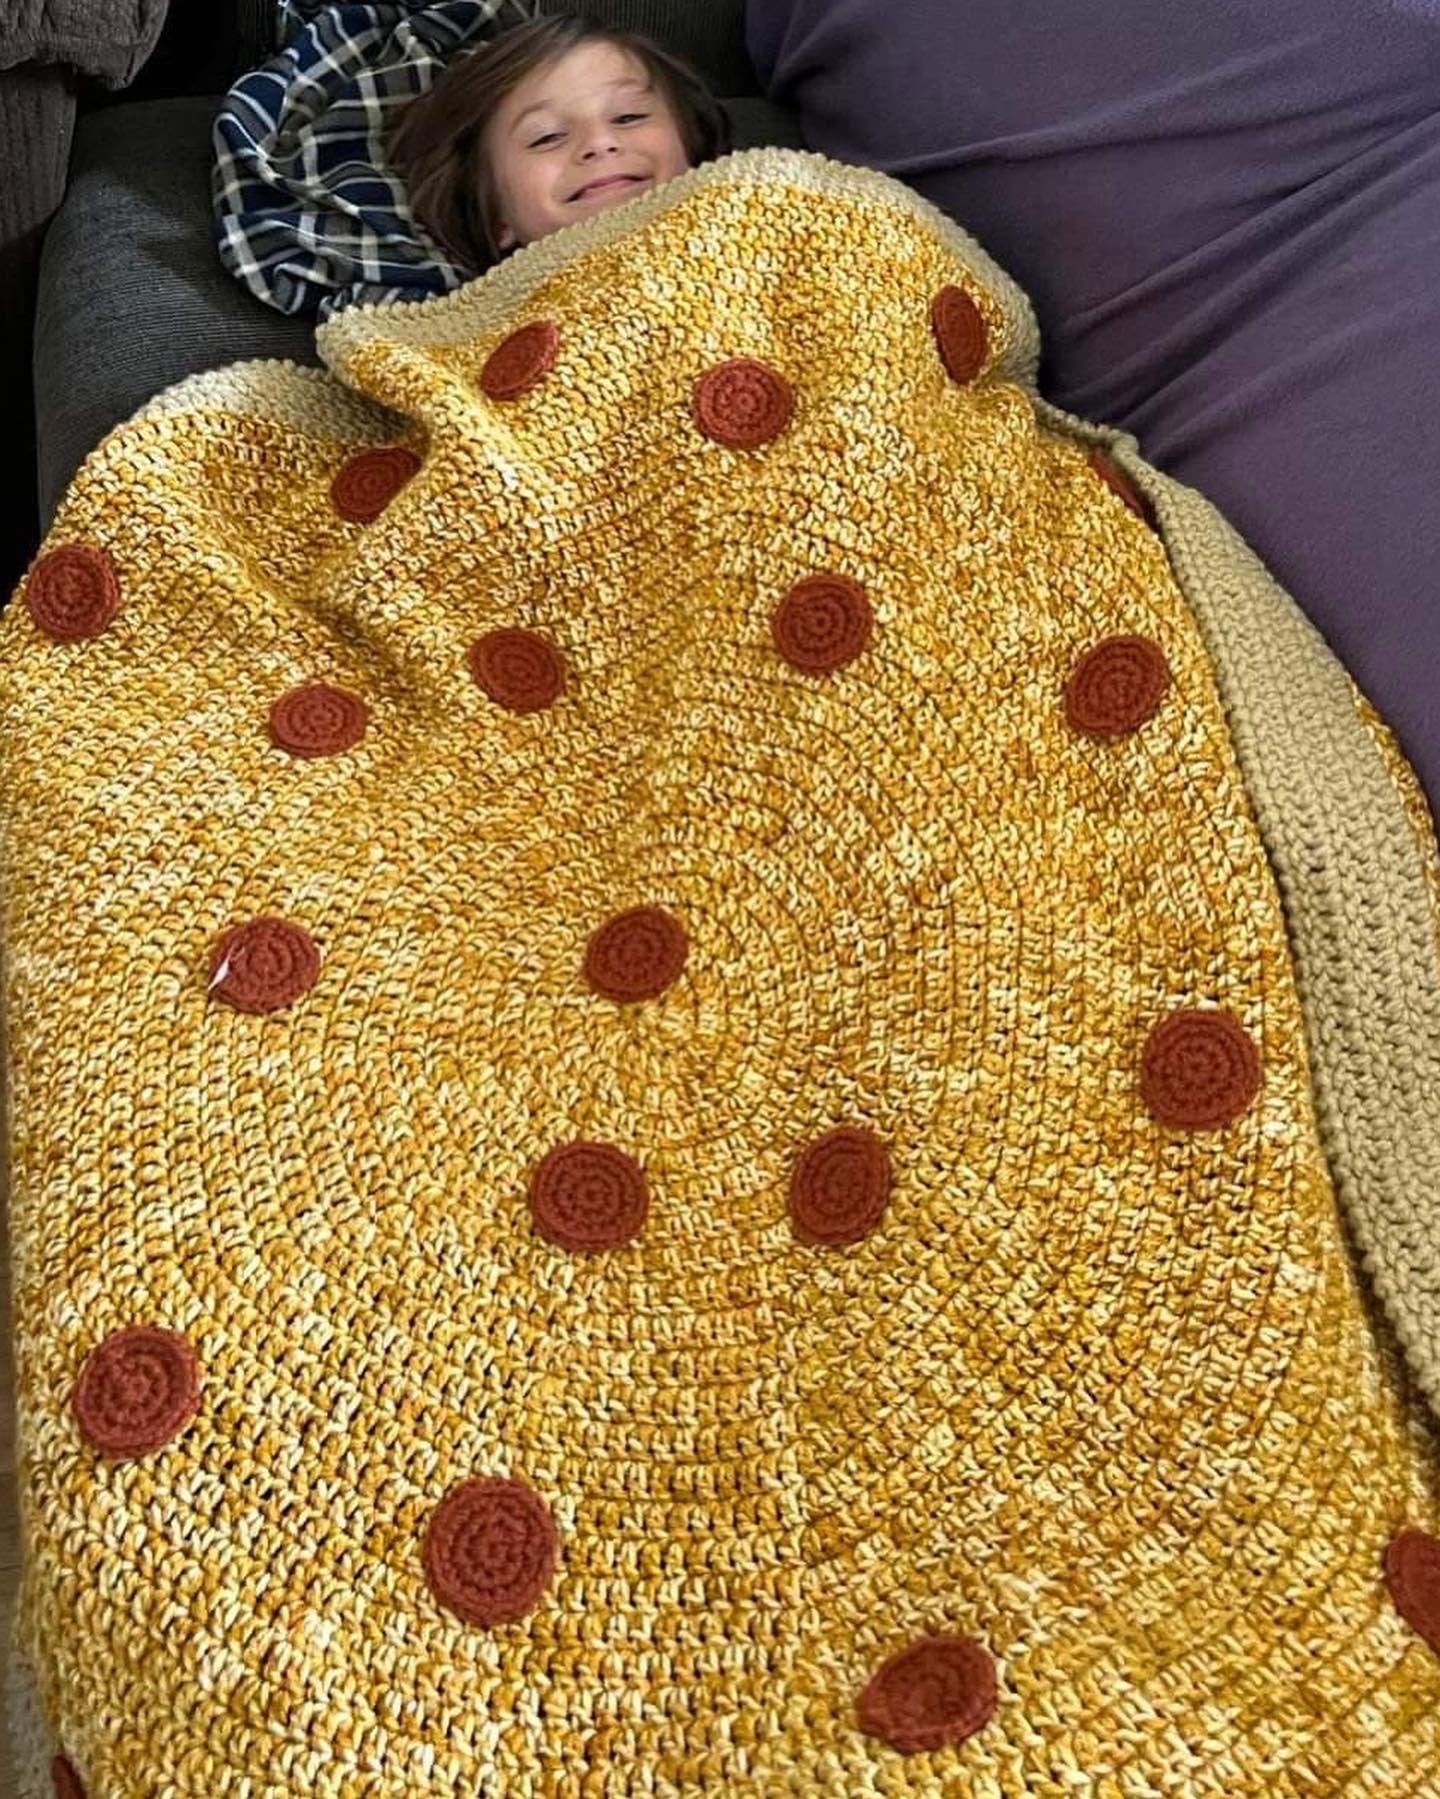 Pizza Blanket – Crochet Hugs by Cathy